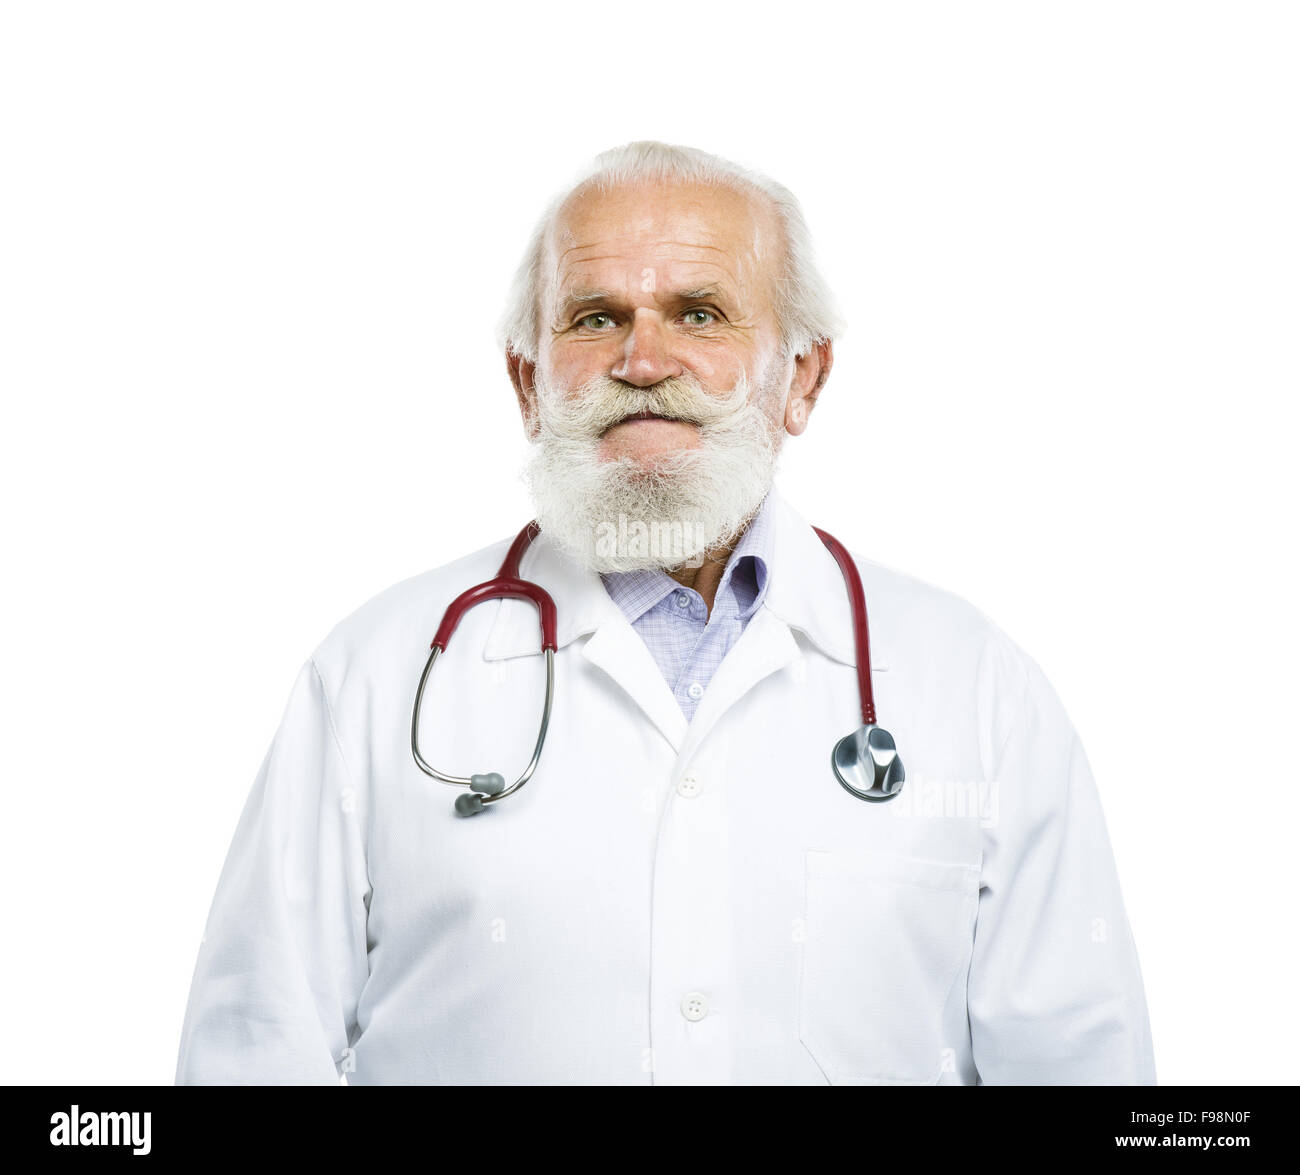 Пожилой мужчина врач. Пожилой доктор. Дедушка врач. Пожилой врач мужчина. Старый врач.